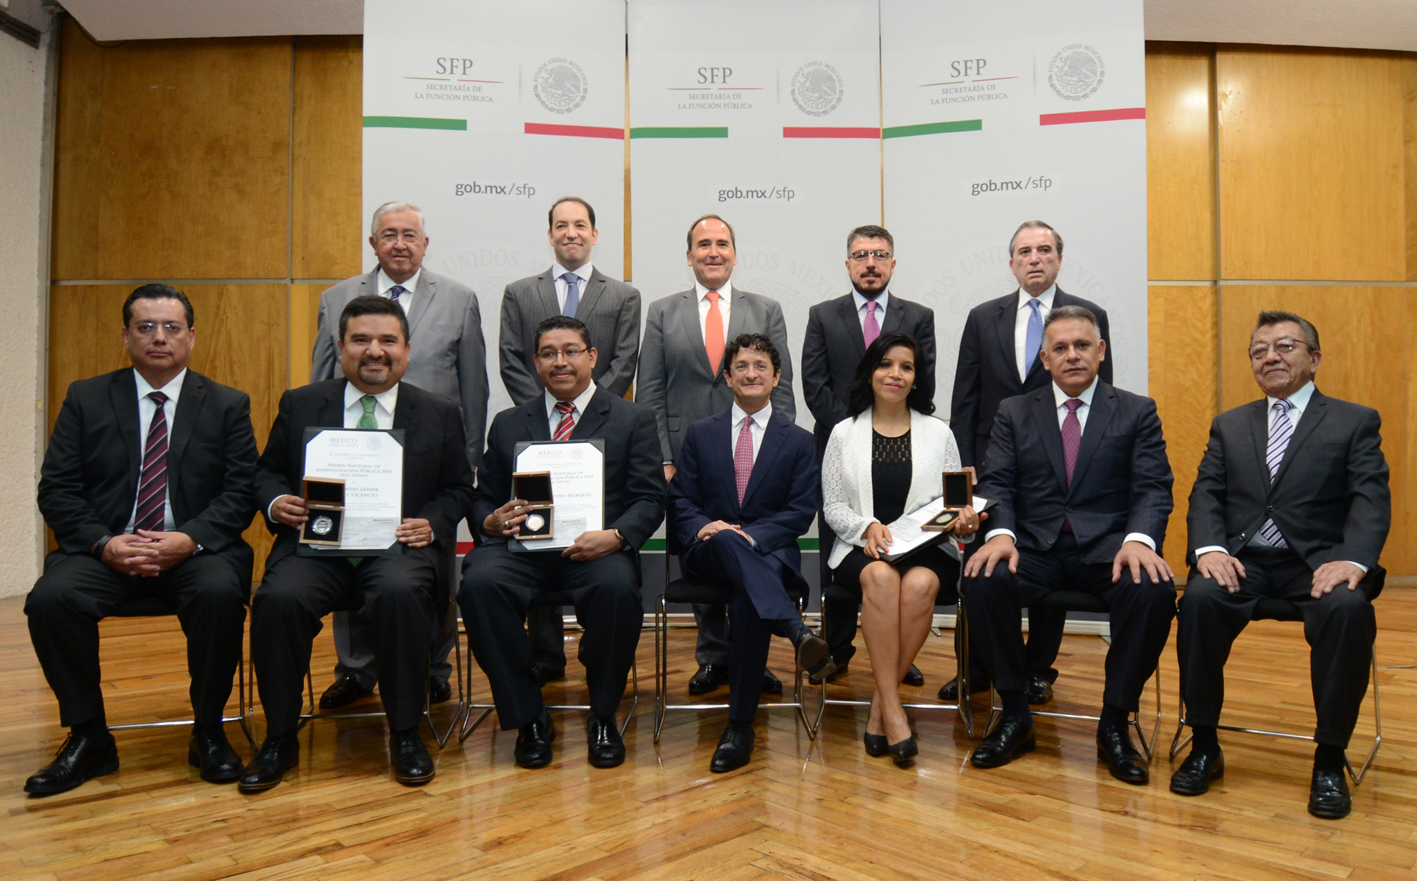 Foto Oficial Premio Nacional de la Administración Pública 2015, ganadores y servidores públicos que entregaron los premios 